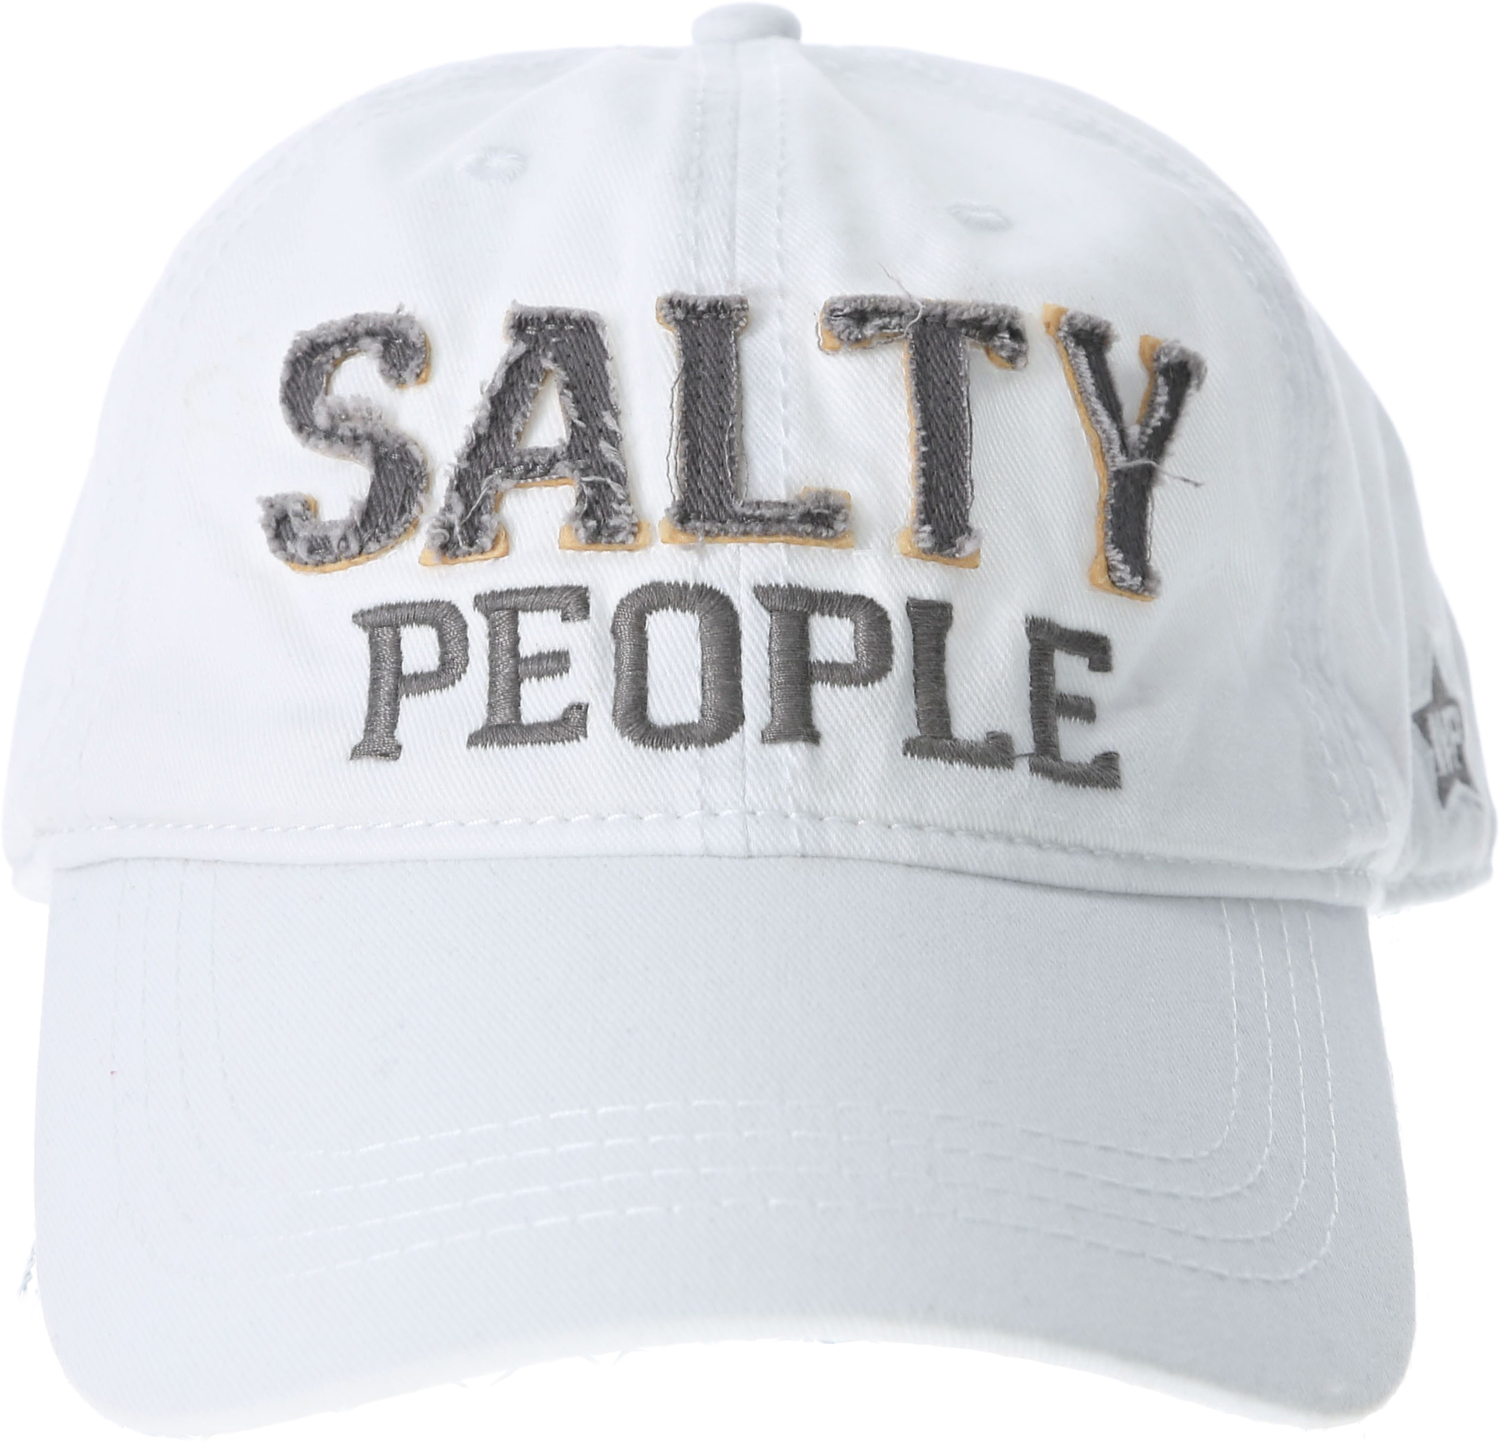 Salty People by We People - Salty People - White Adjustable Hat